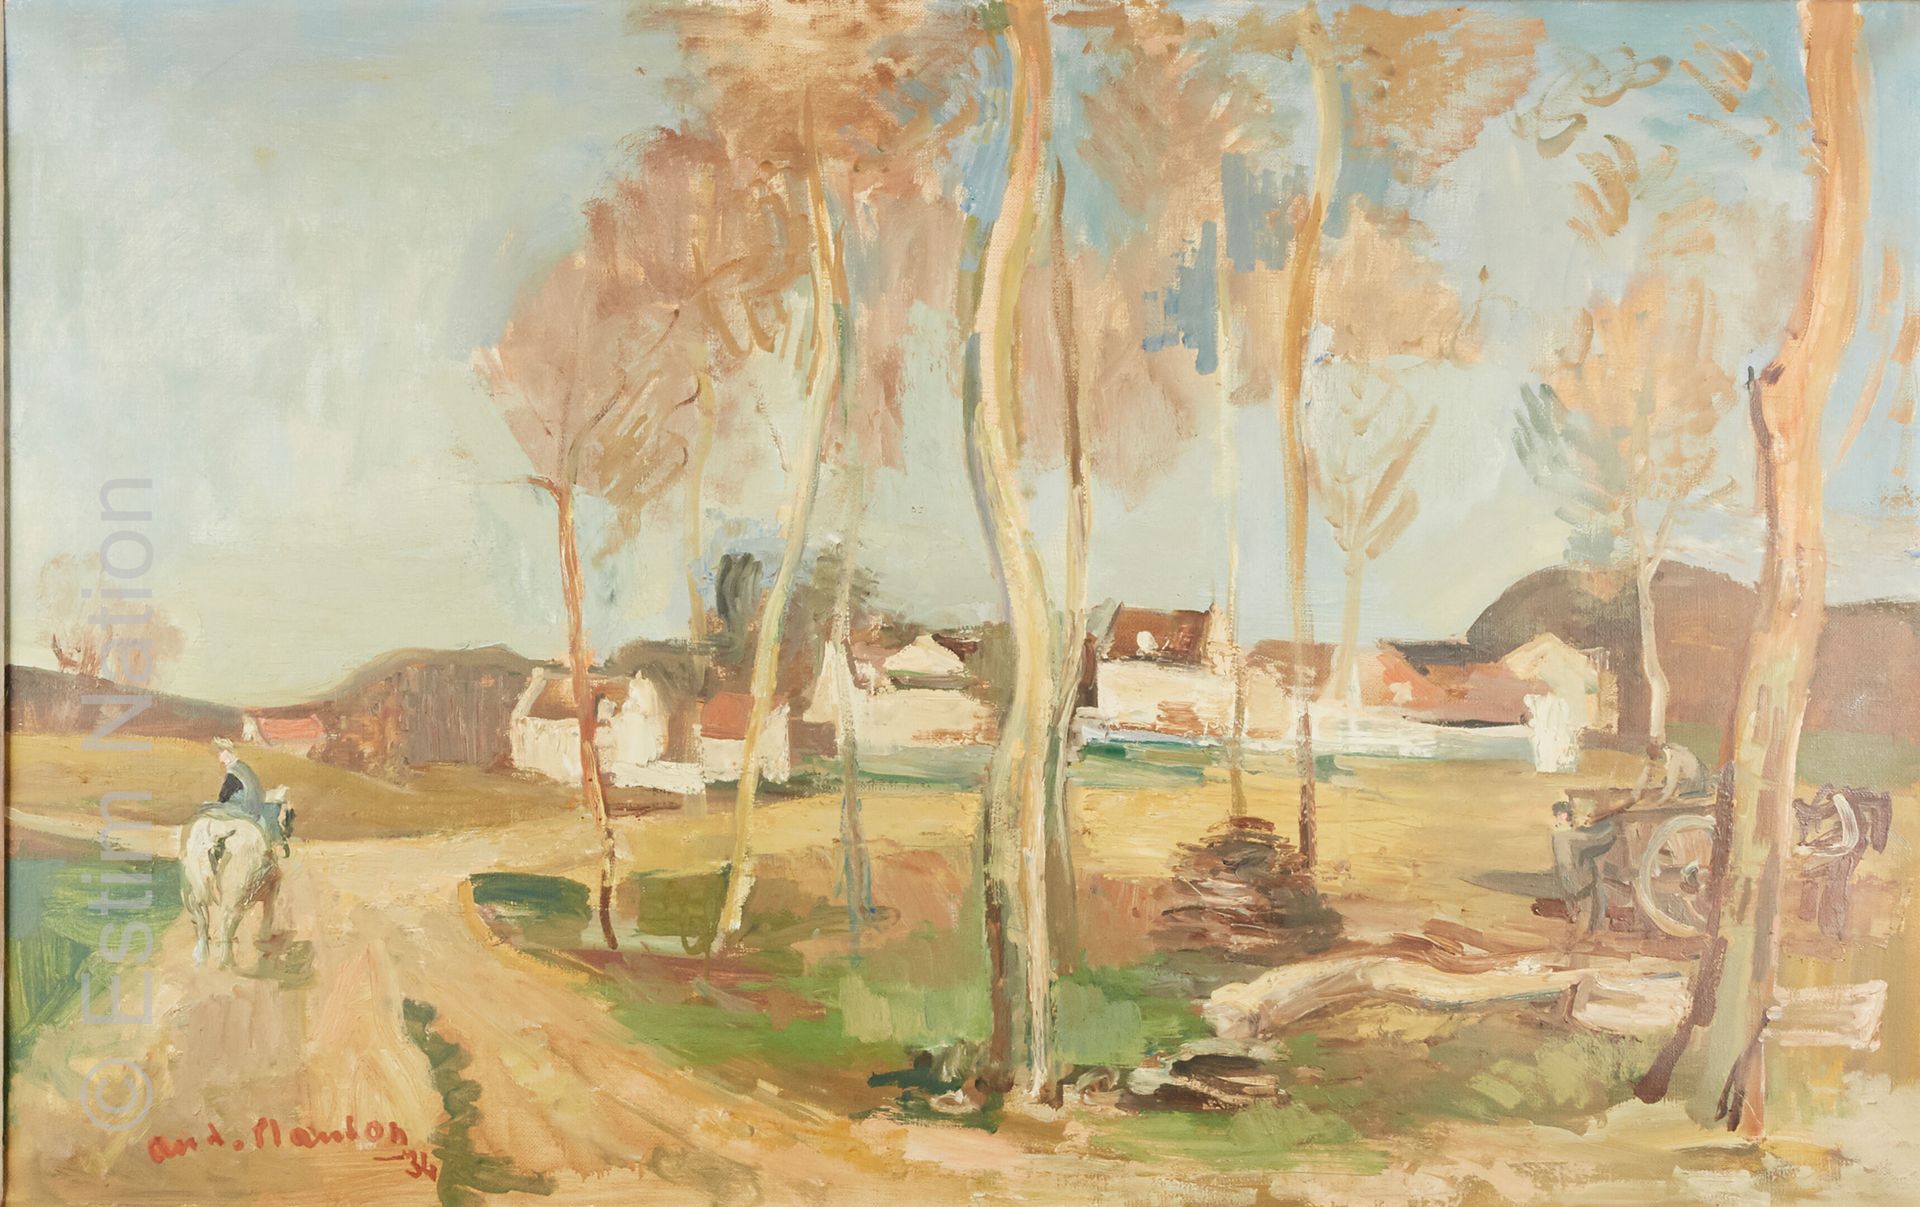 ART DU XXE SIECLE - PLANSON André PLANSON (1898-1981)

"Bauern der Ile de France&hellip;